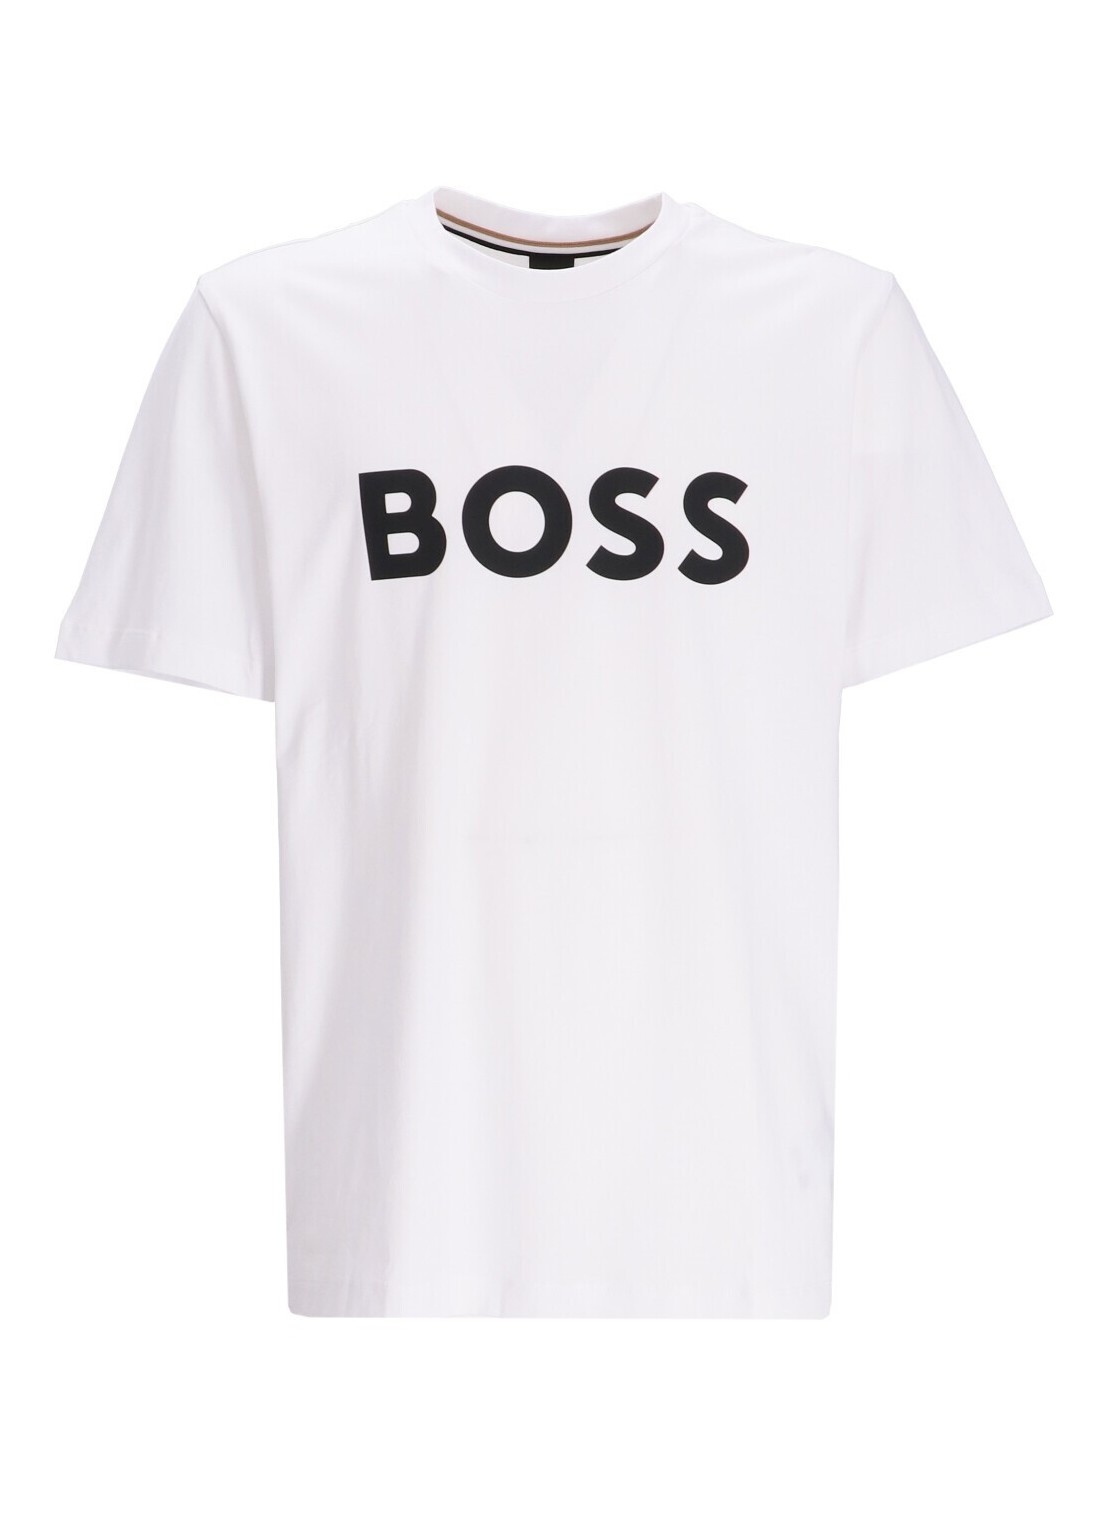 Camiseta boss t-shirt man tiburt 354 50495742 100 talla XXL
 